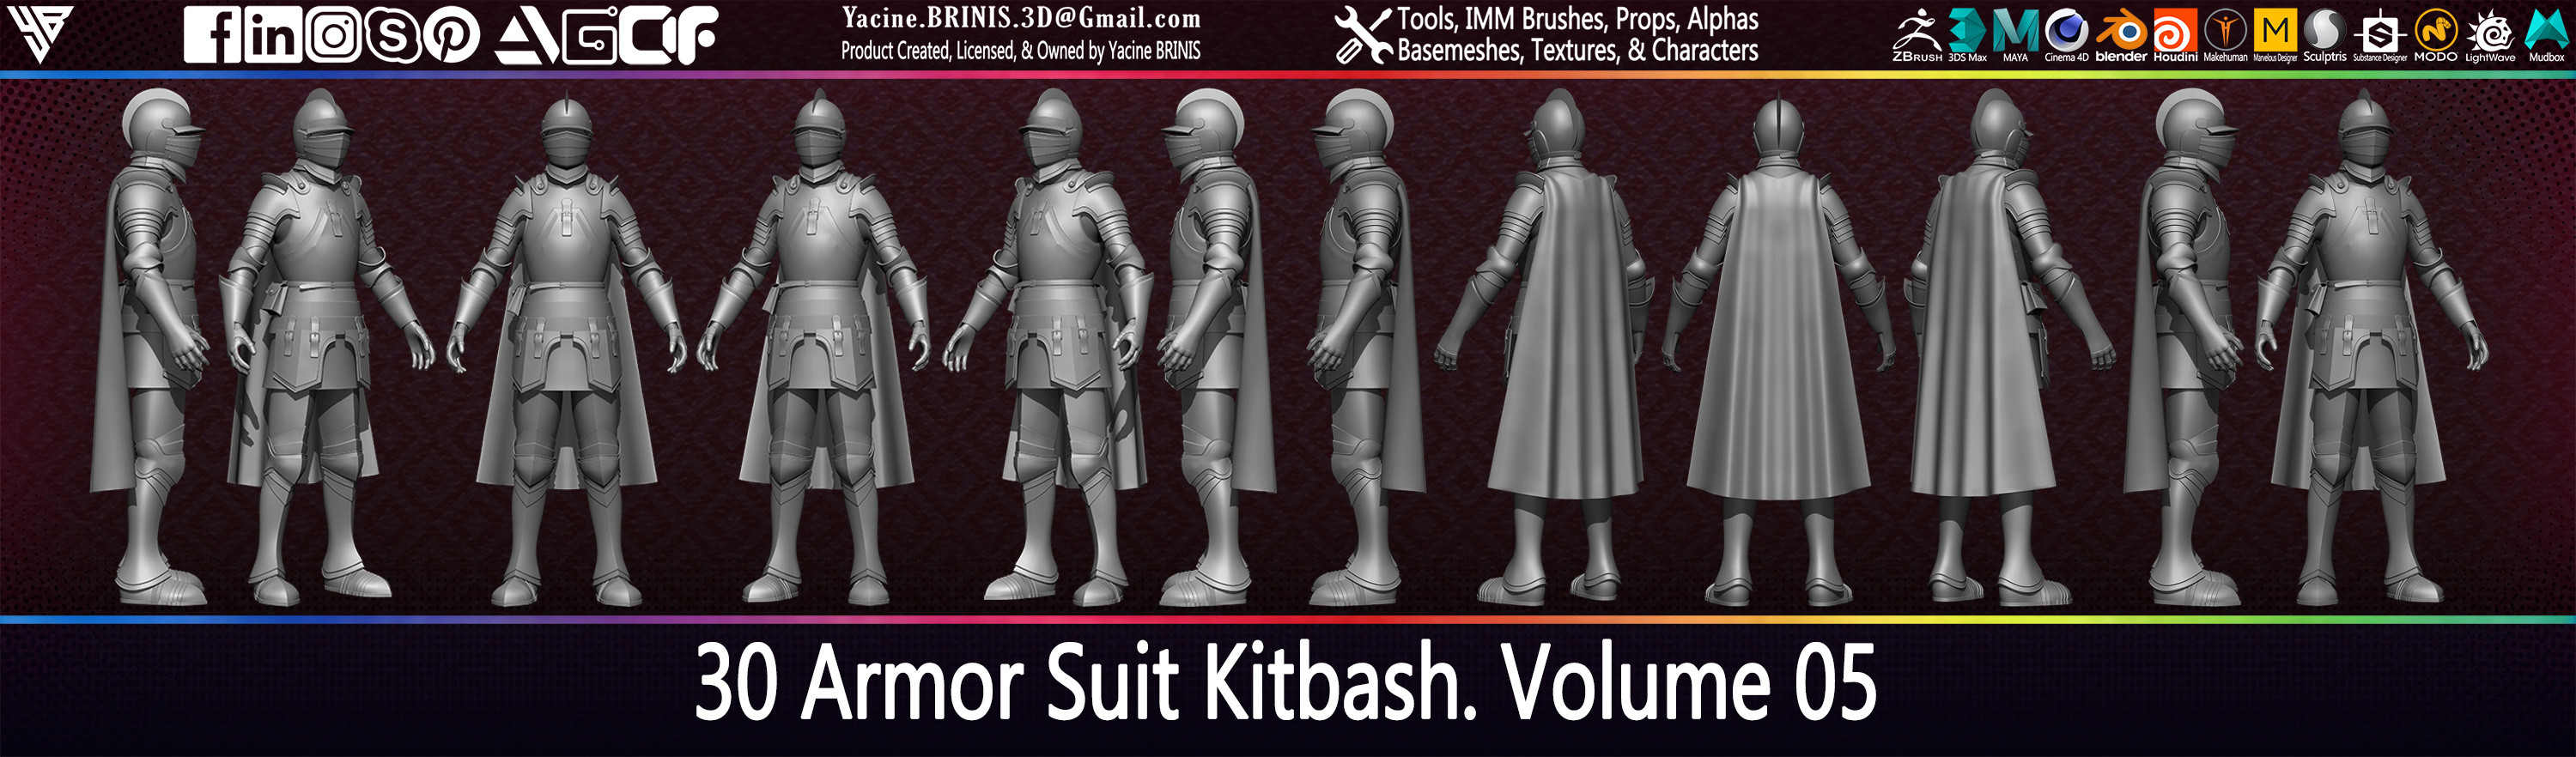 30 Armor Suit Kitbash By Yacine BRINIS Set 029